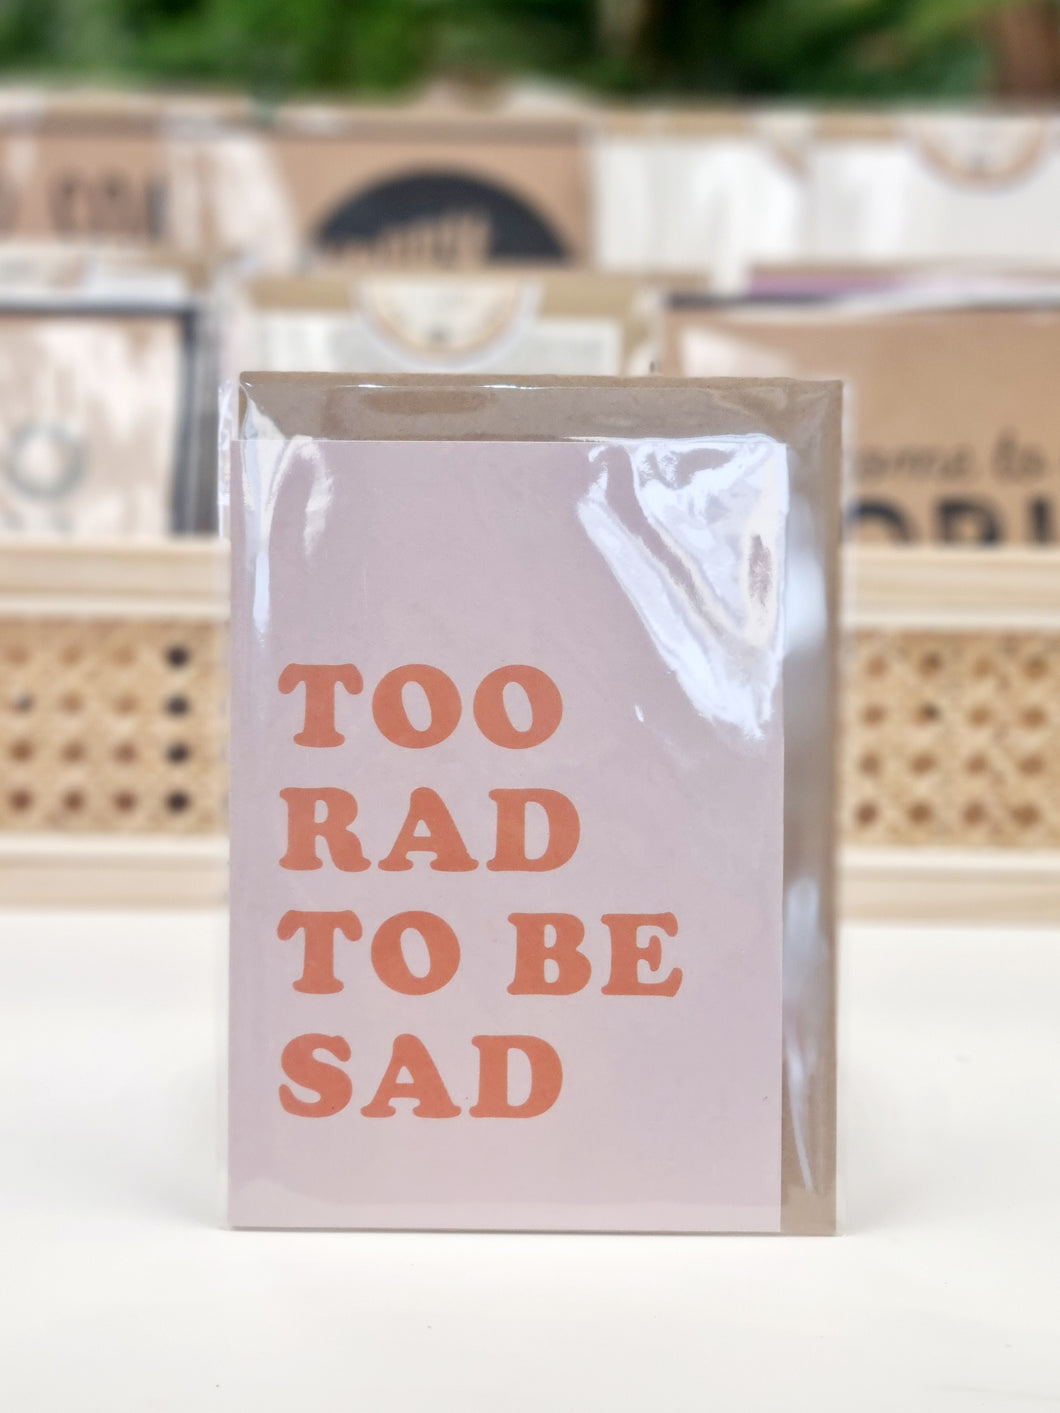 Too rad to be sad